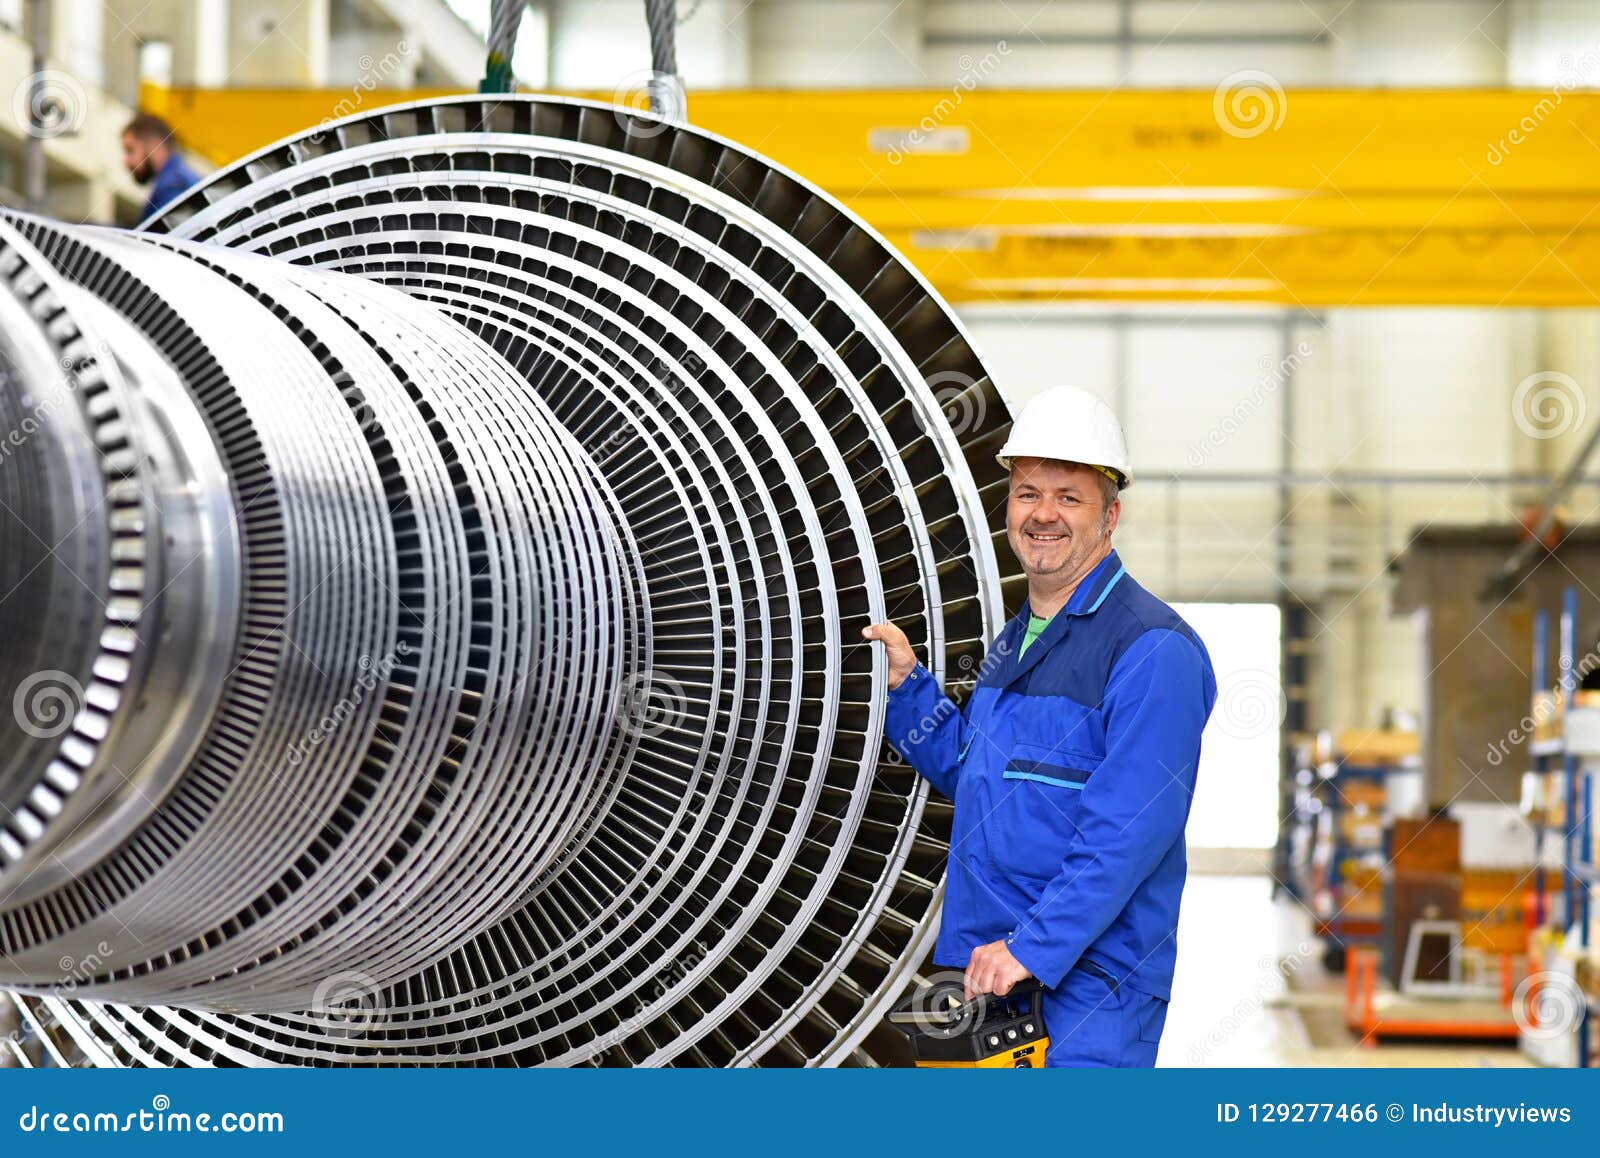 Gas turbine design engineer jobs